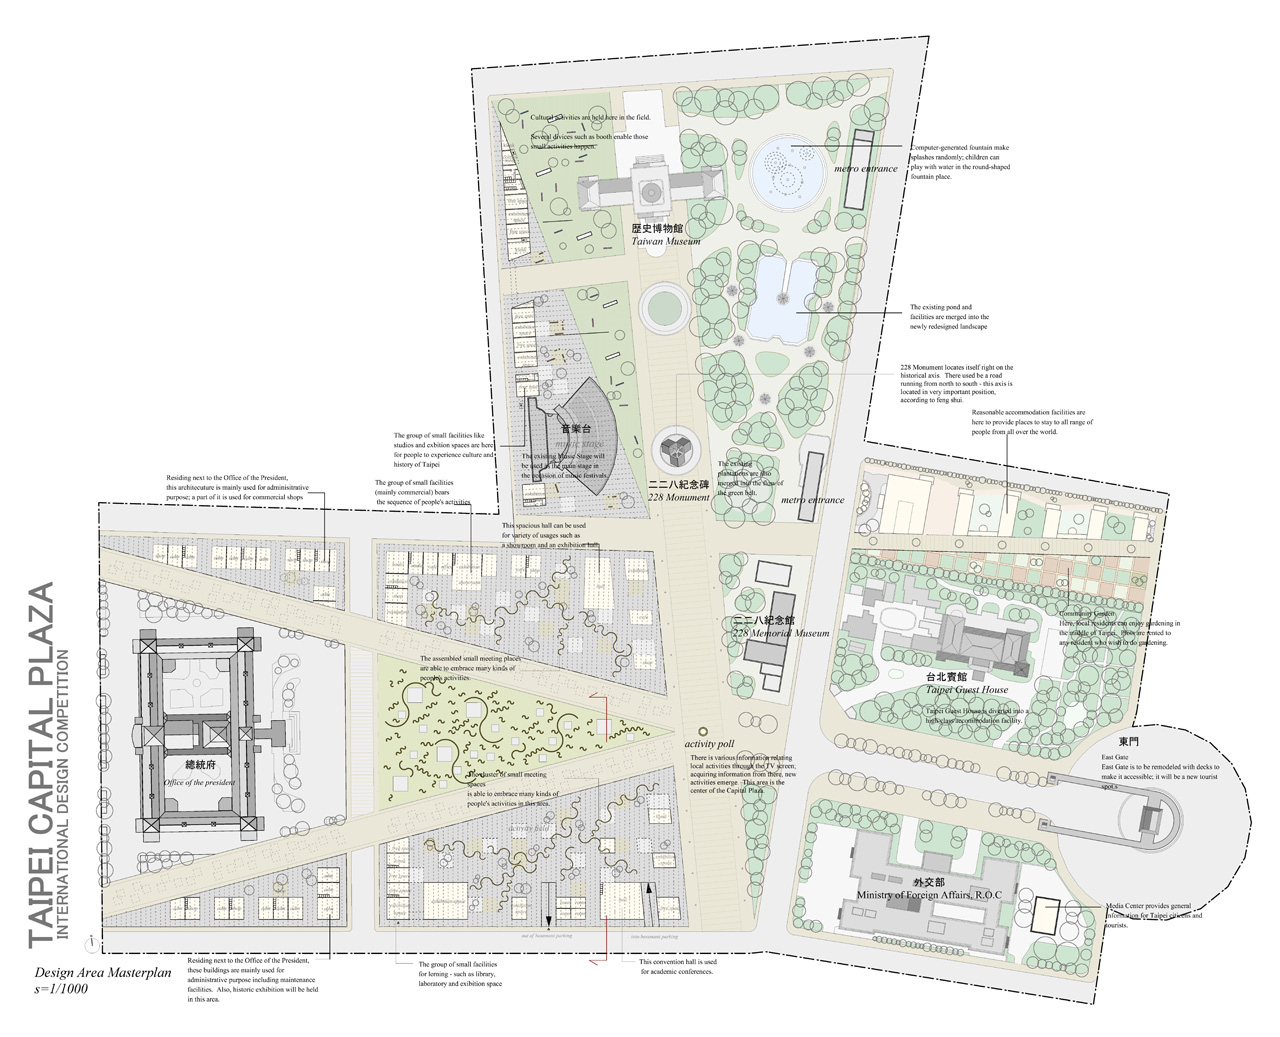 台北総統府広場改造計画国際設計競技・佳作案(2001)